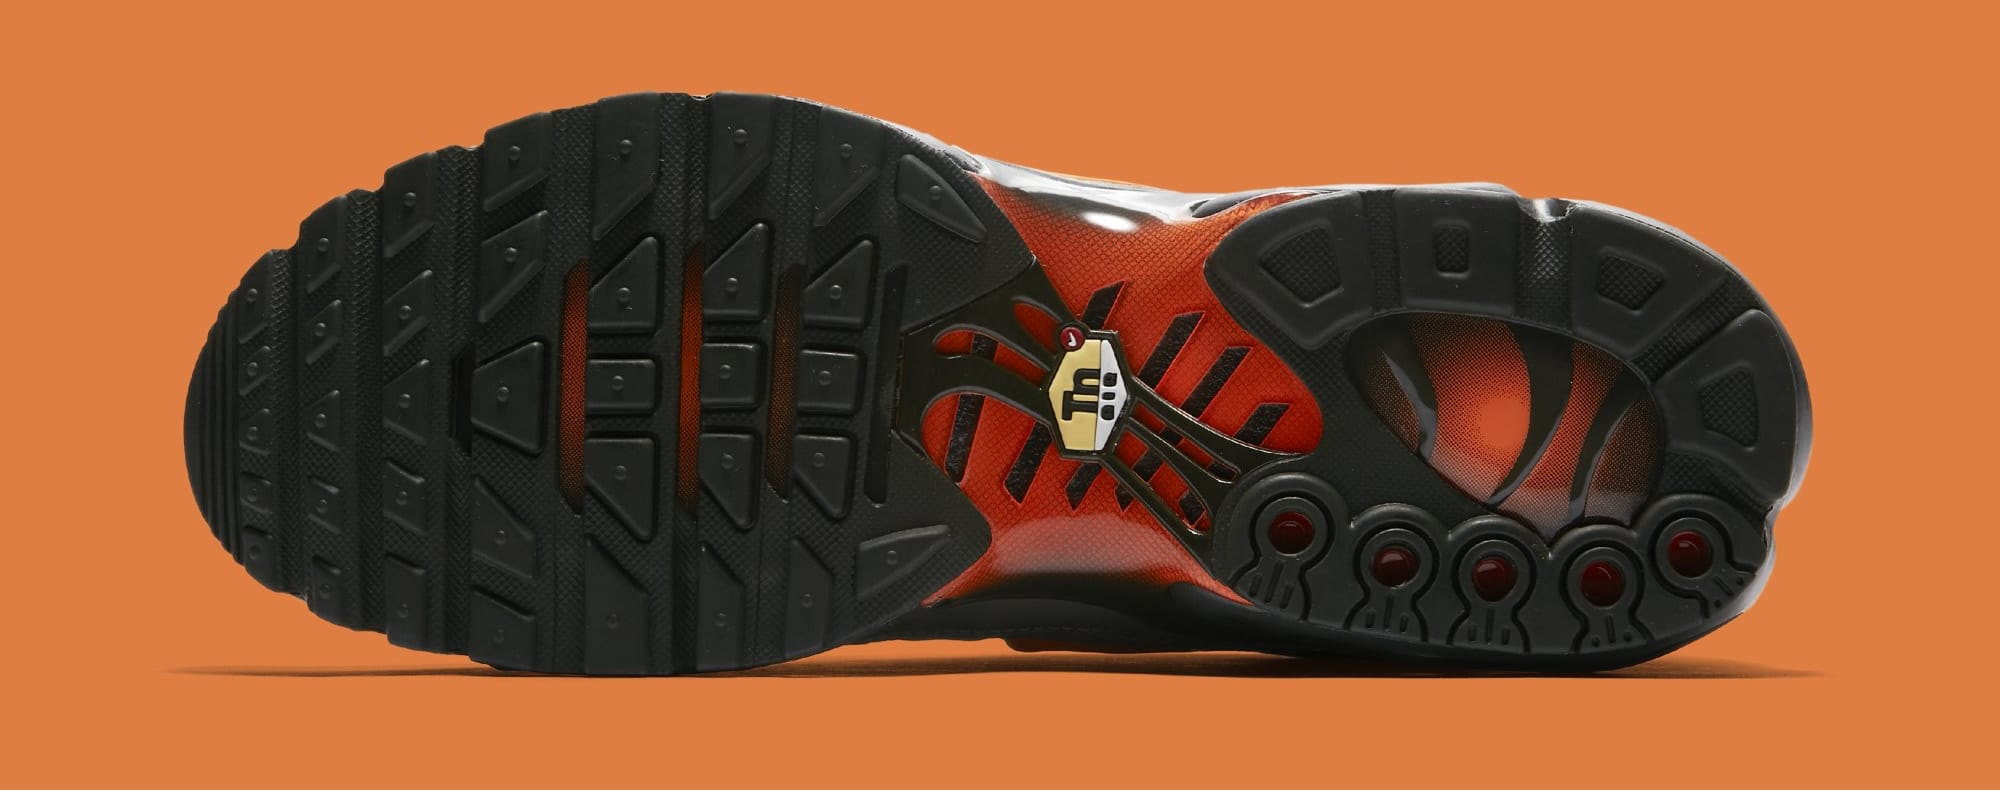 Nike Air Max Plus &#x27;Dark Stucco/Total Orange&#x27; AJ2013-003 (Bottom)